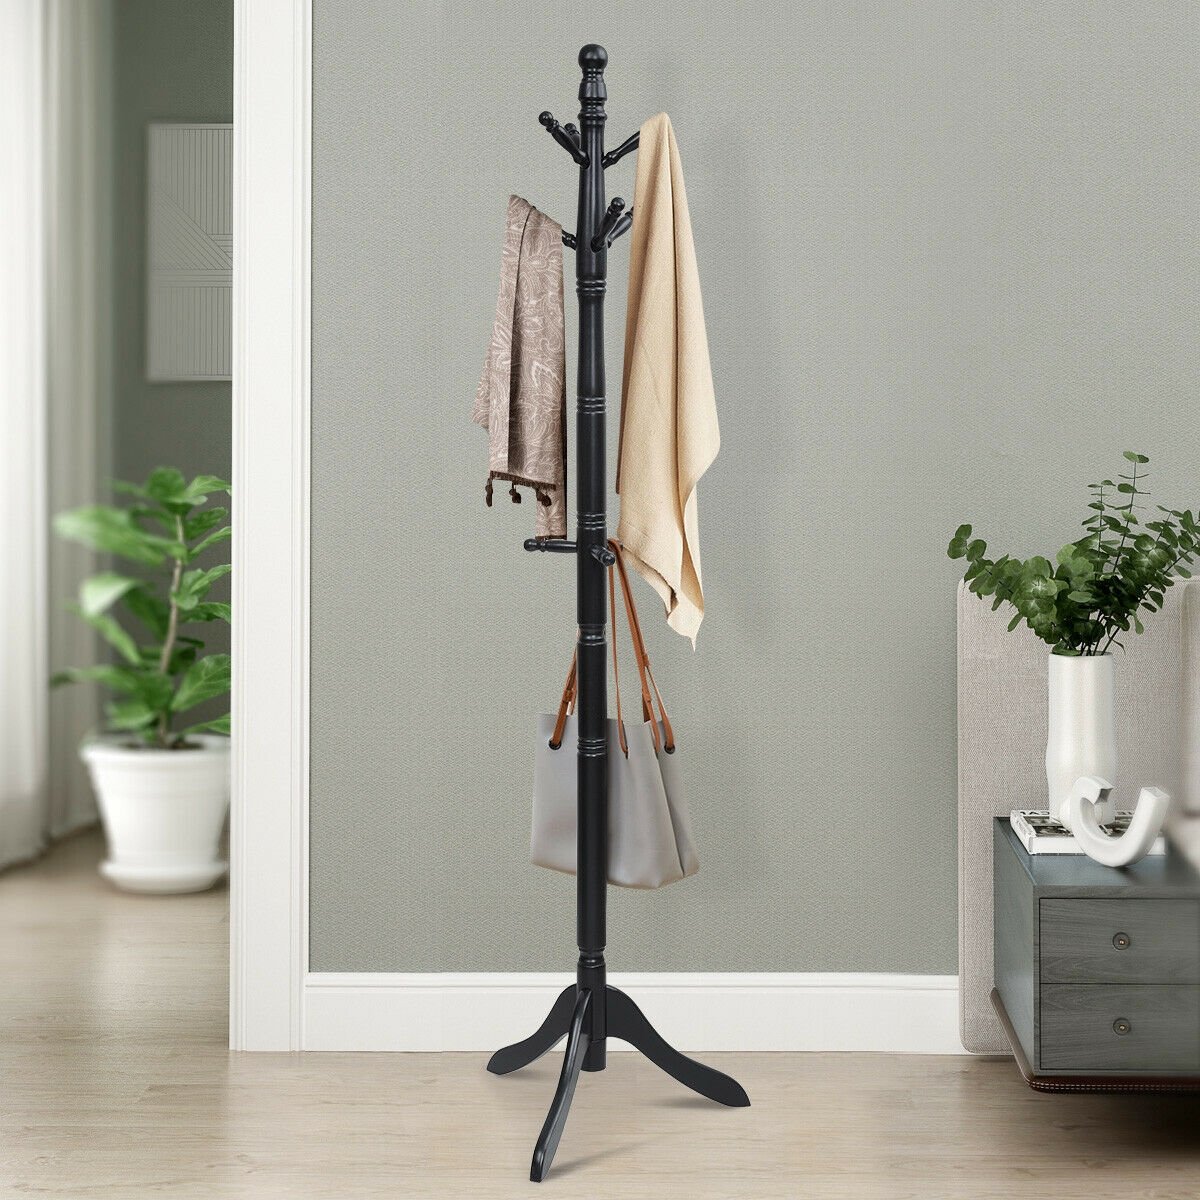 Adjustable Free Standing Wooden Coat Rack, Black - Gallery Canada